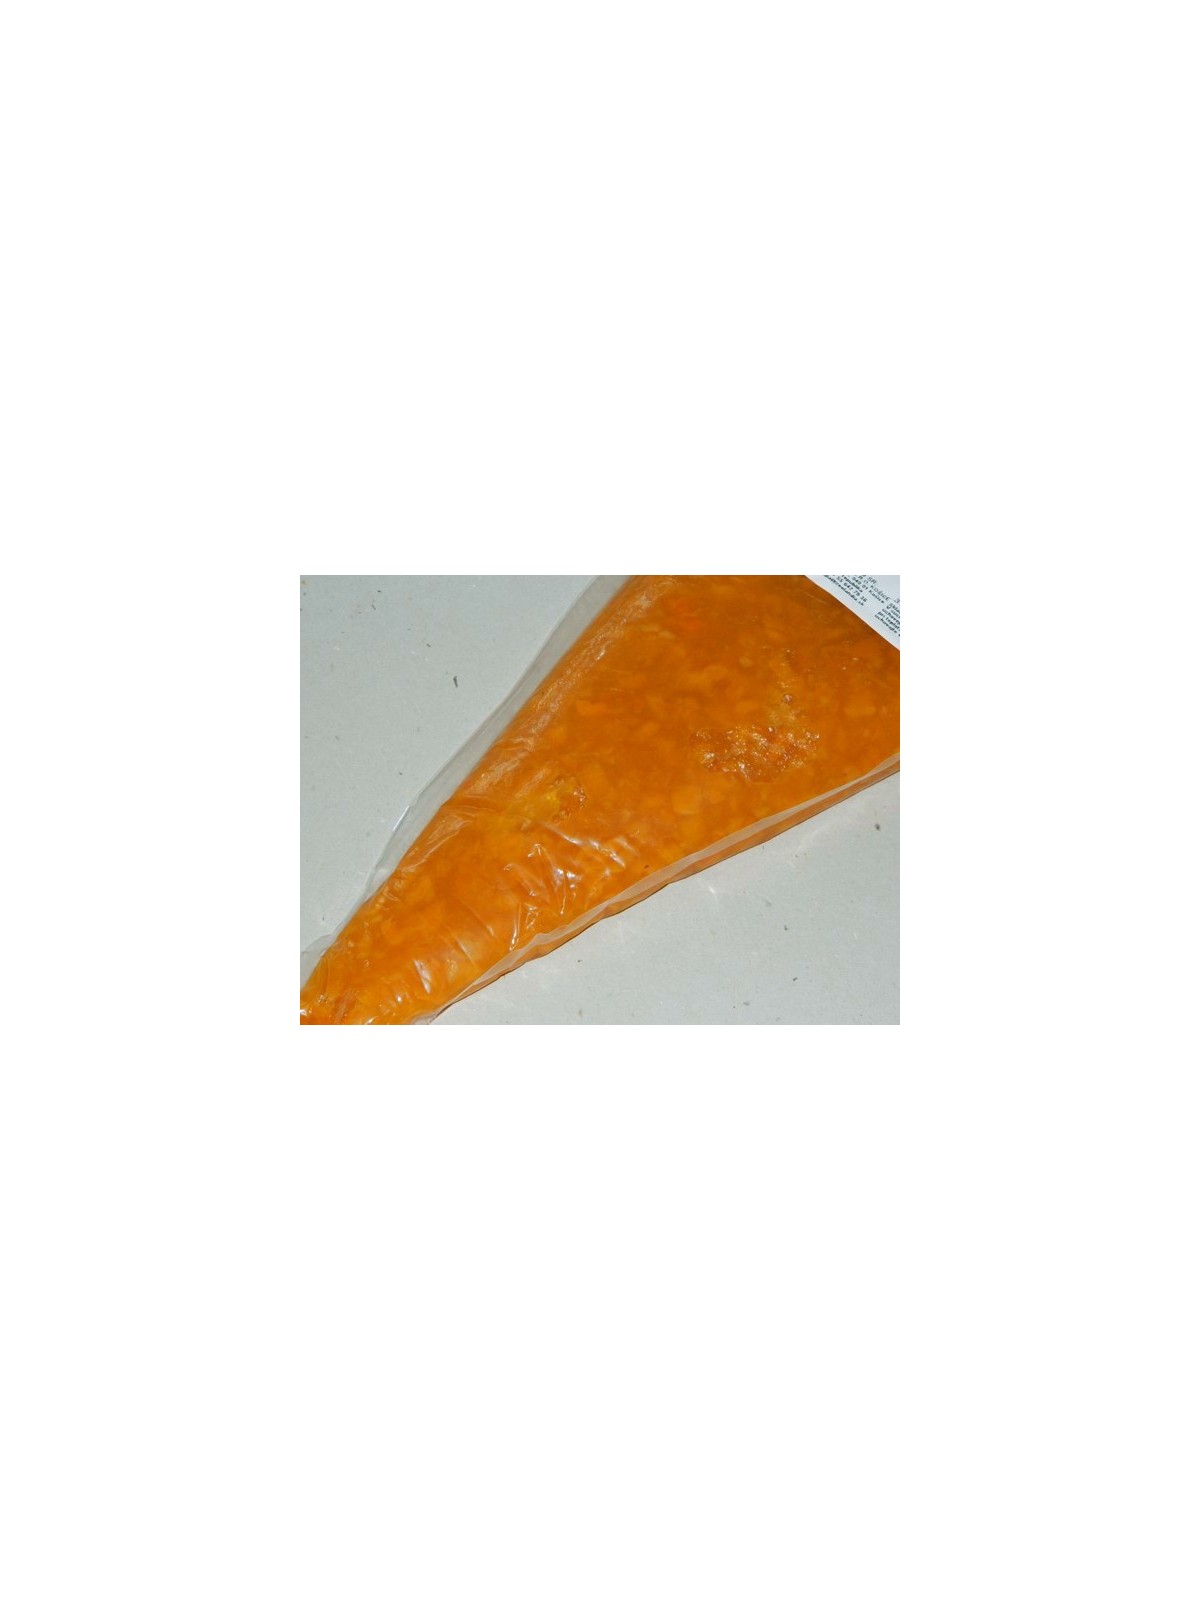 Apricot gel - fruit filling - 1kg